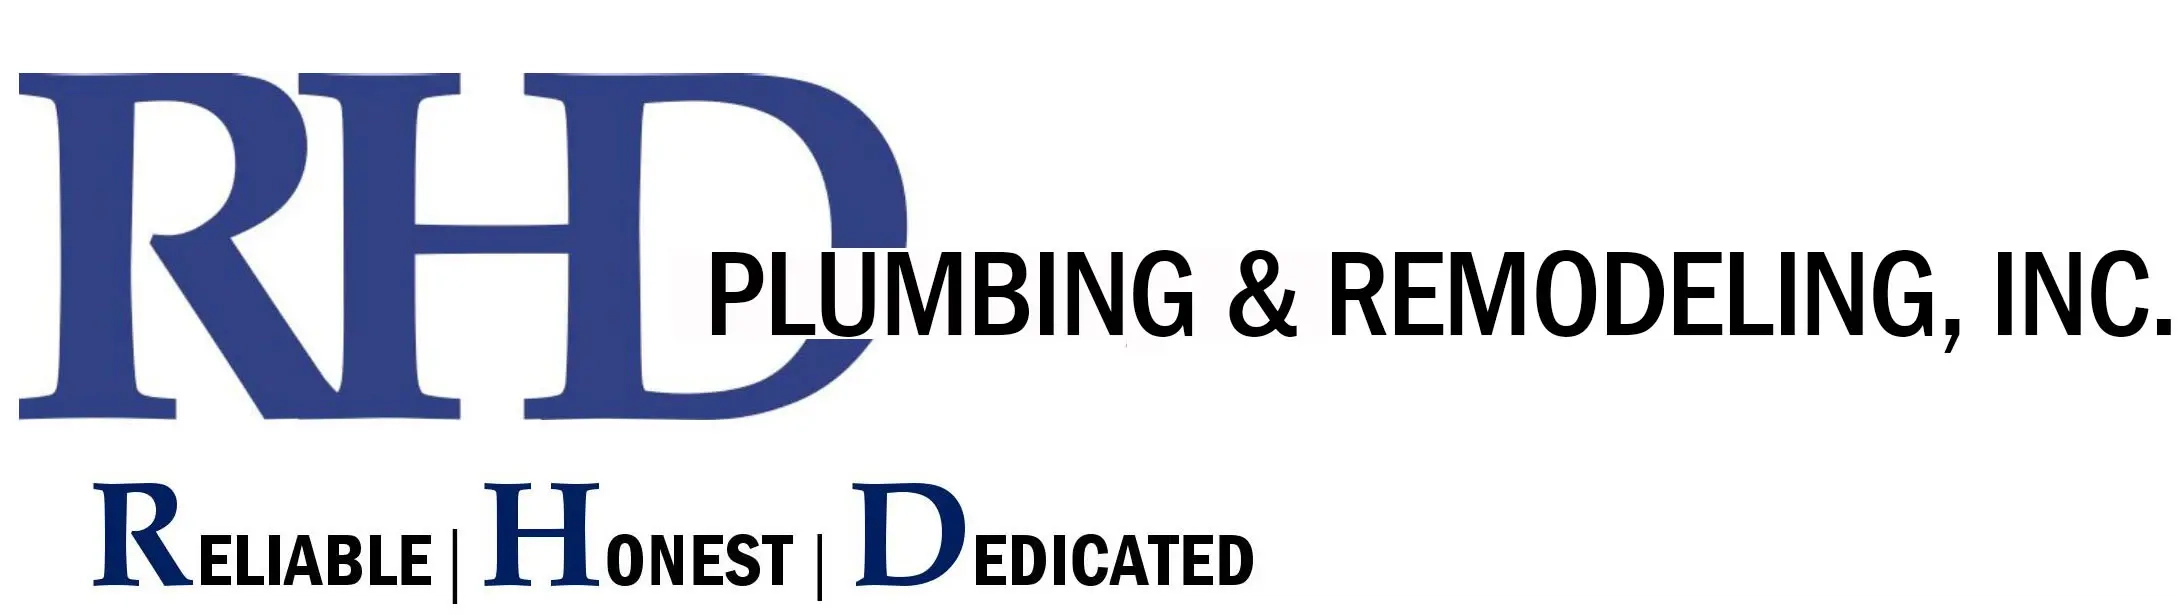 RHD Plumbing & Remodeling, Inc. Logo